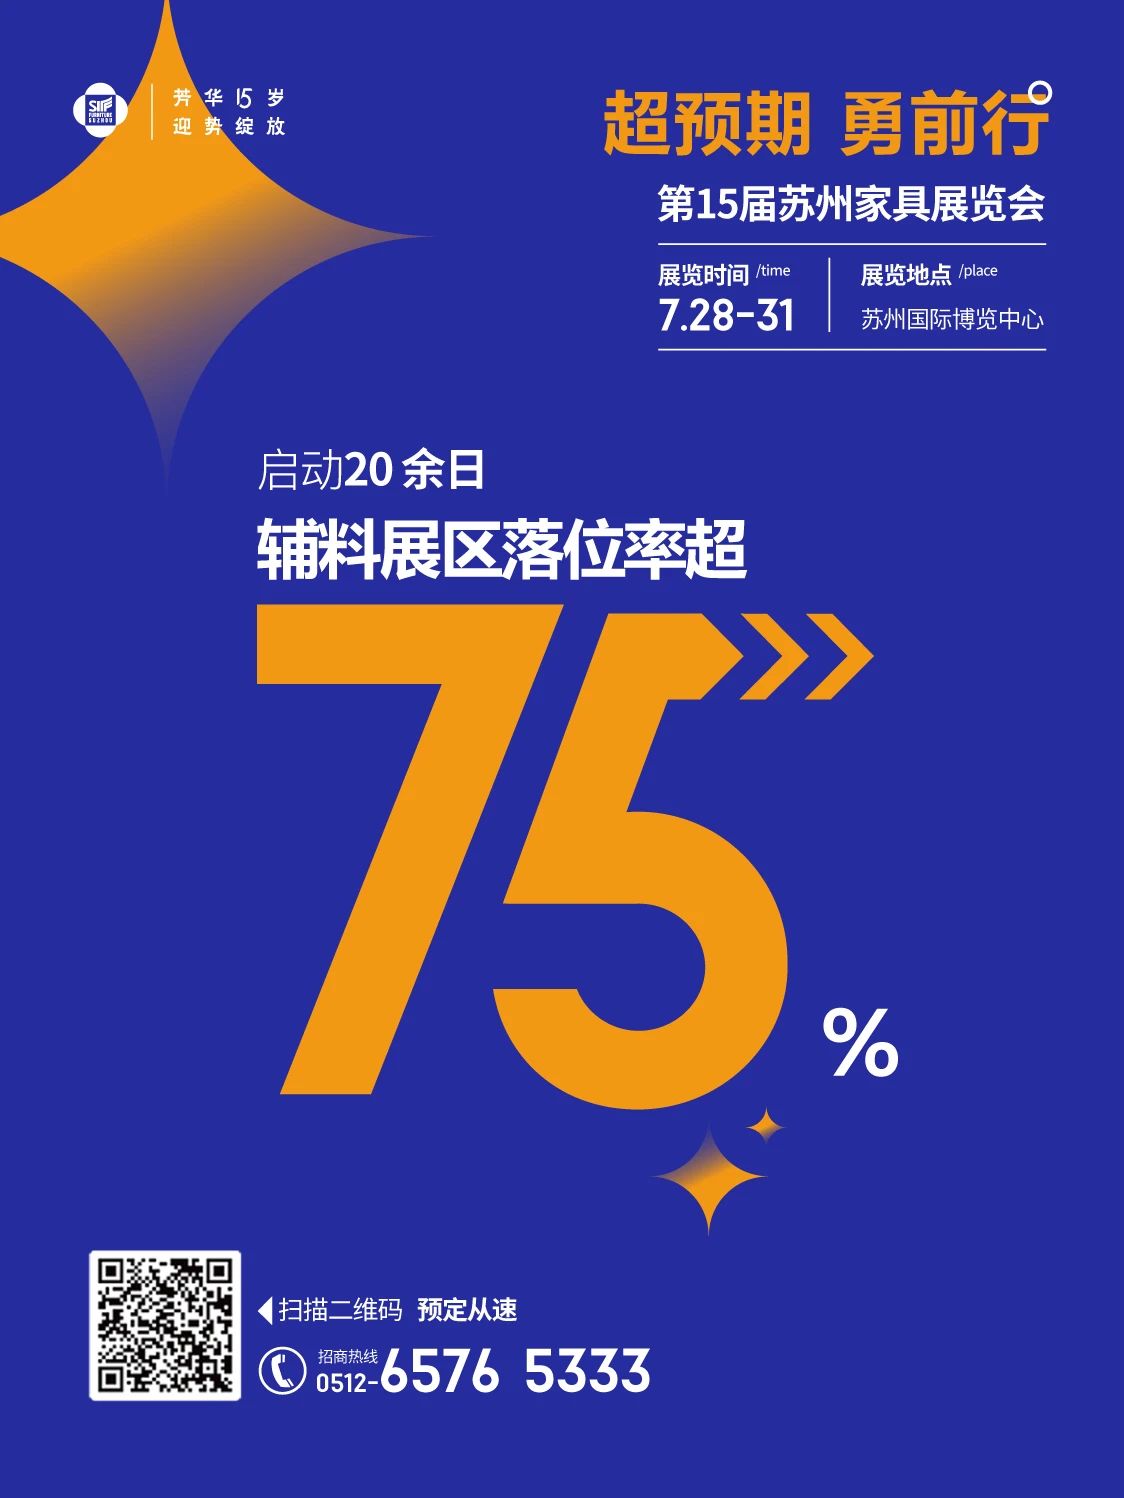 2023第15届苏州家具展览会辅料展区落位率超75%！！！